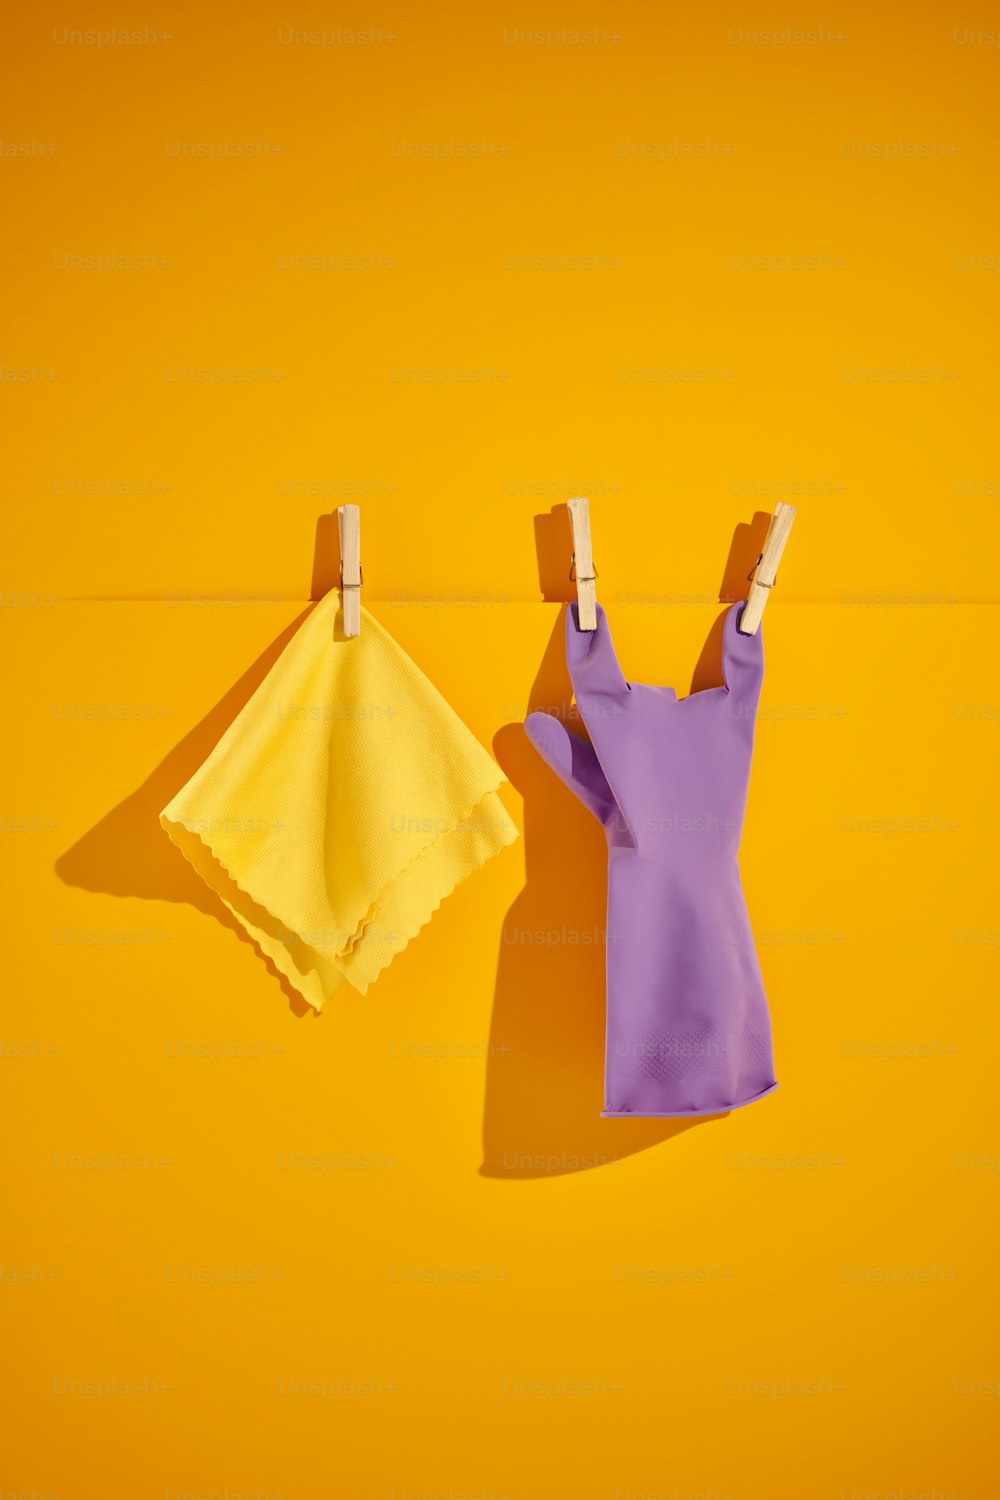 roupas penduradas em alfinetes de roupas em um fundo amarelo